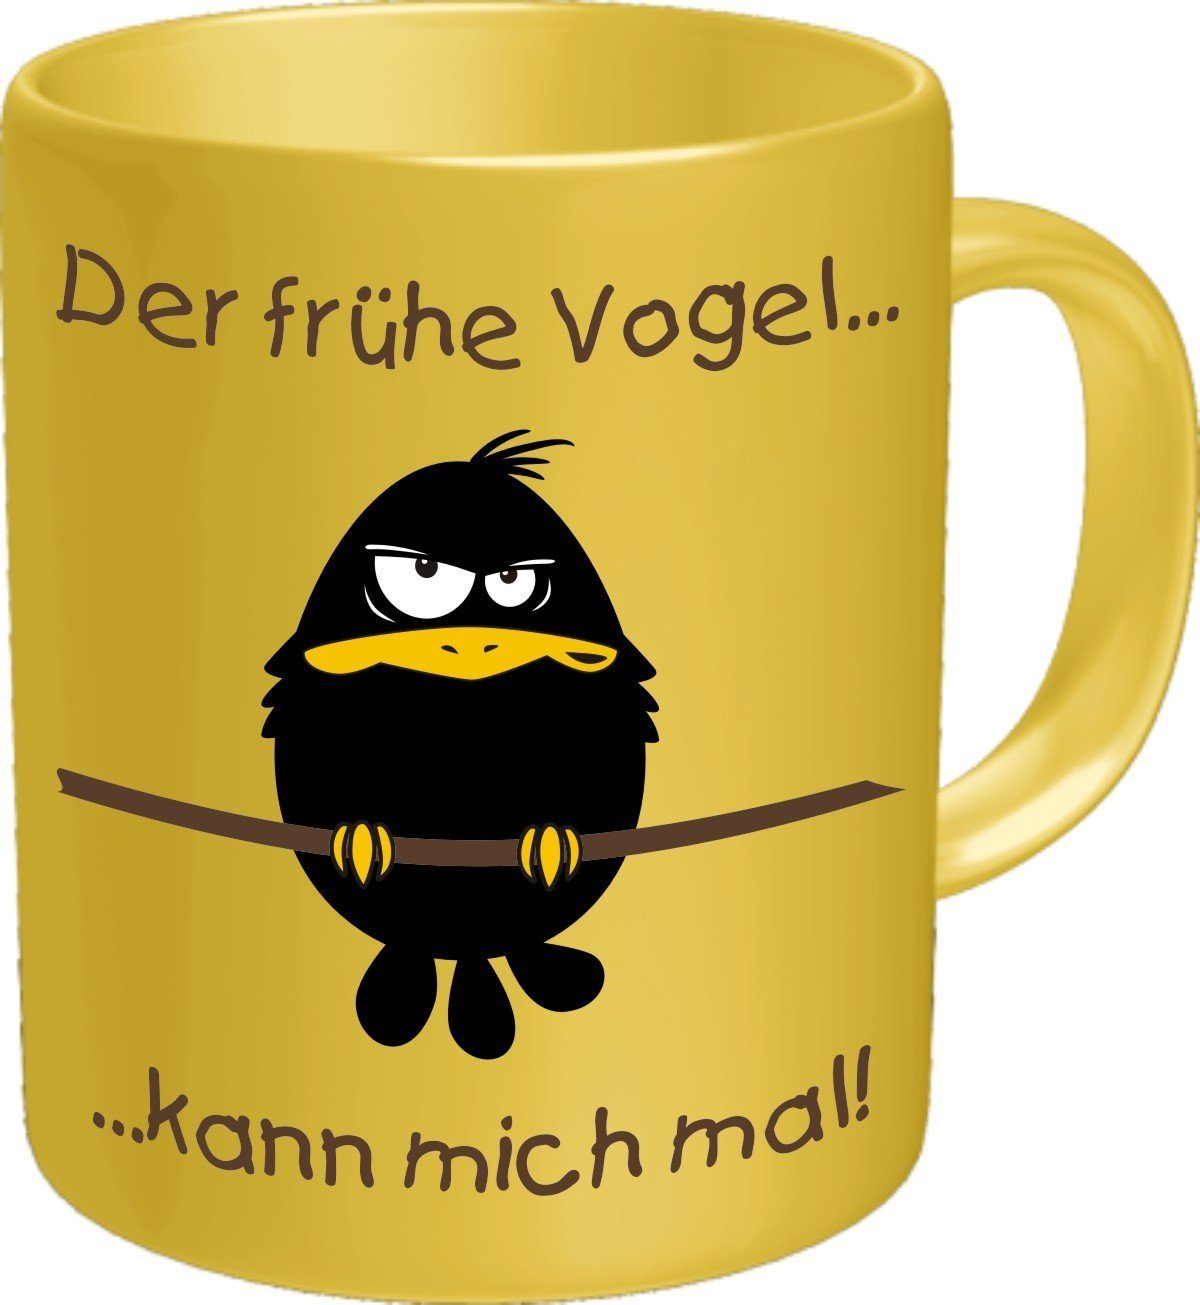 Rahmenlos Tasse Kaffeebecher für den Morgenmuffel: Der frühe Vogel kann mich mal!, Keramik